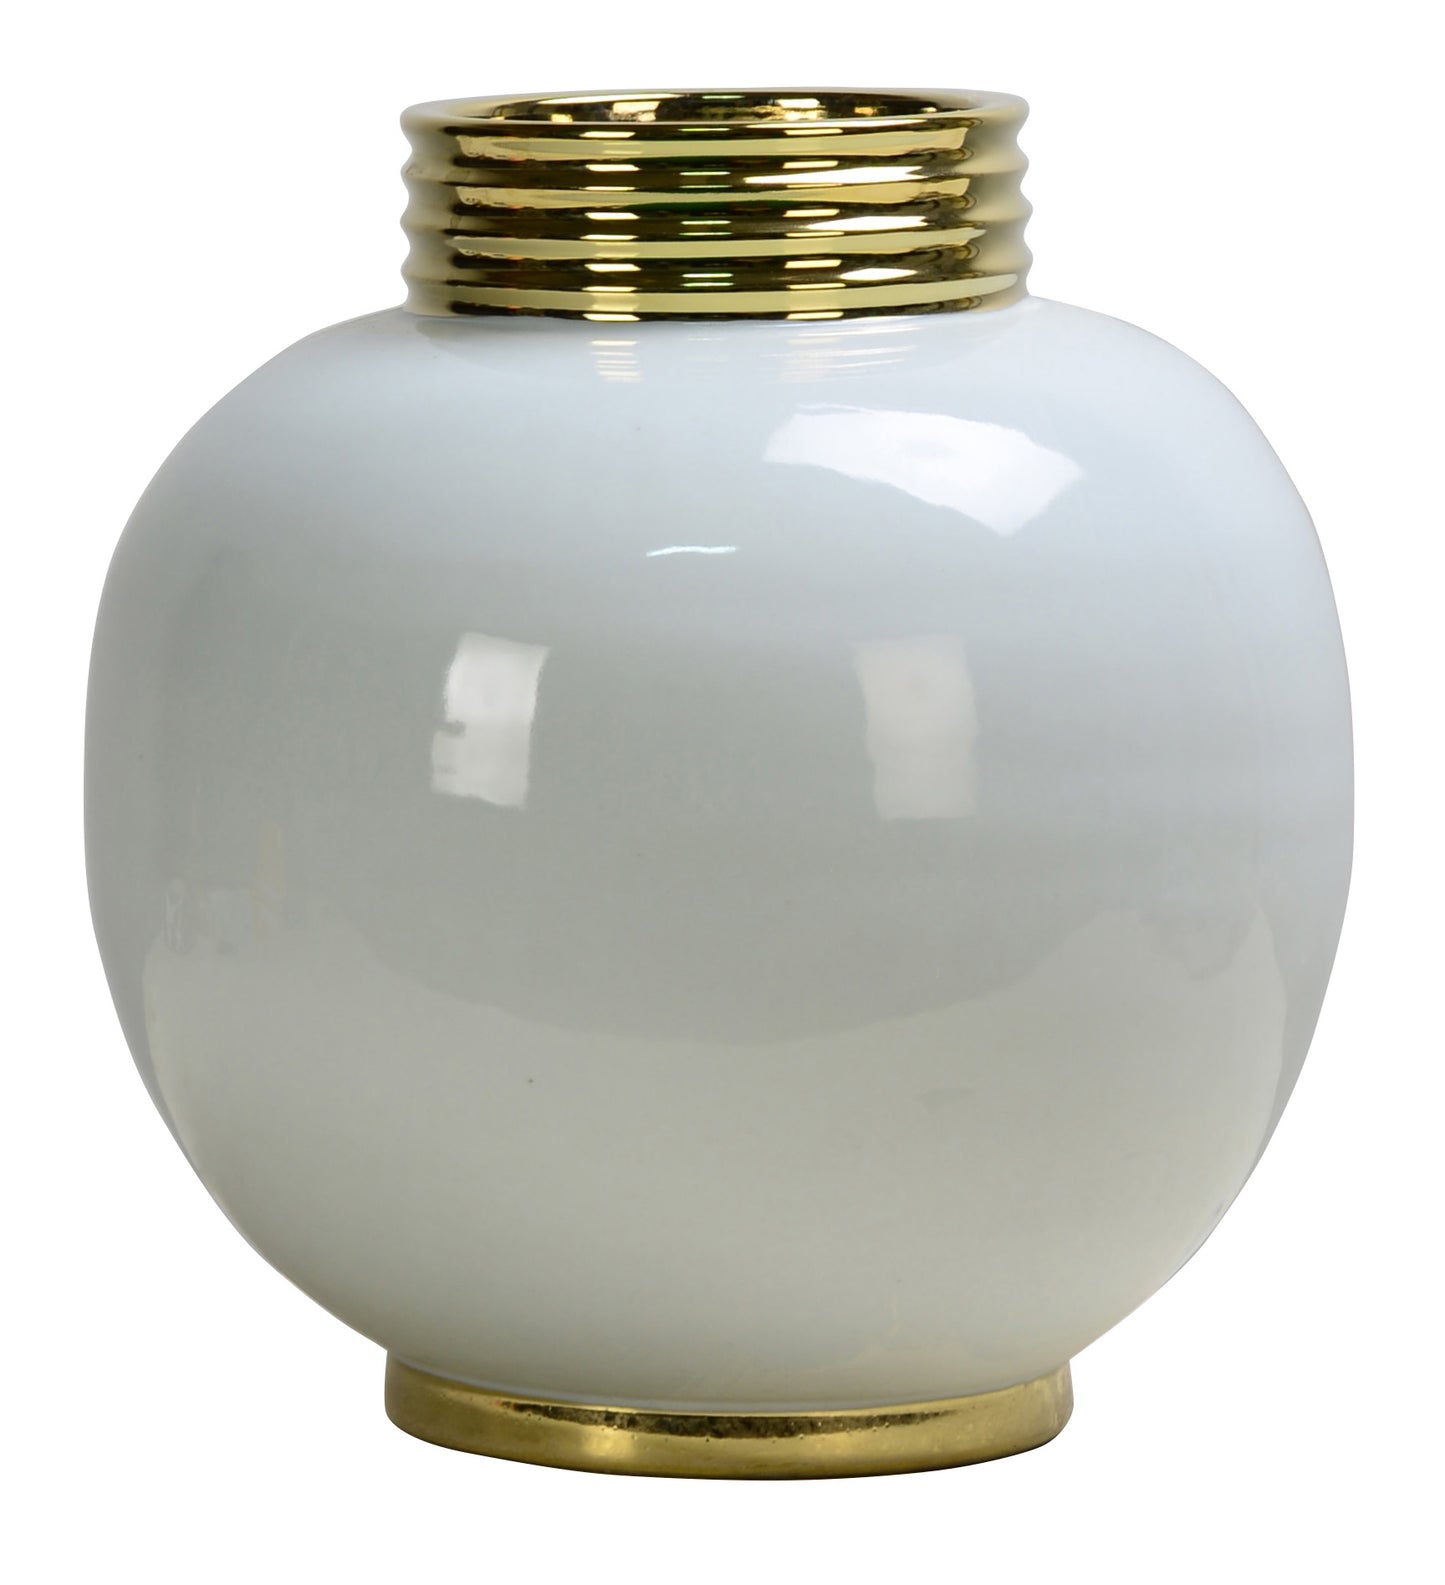 Glossy Off White Gold Trim Round Ceramic Vase - 29cm